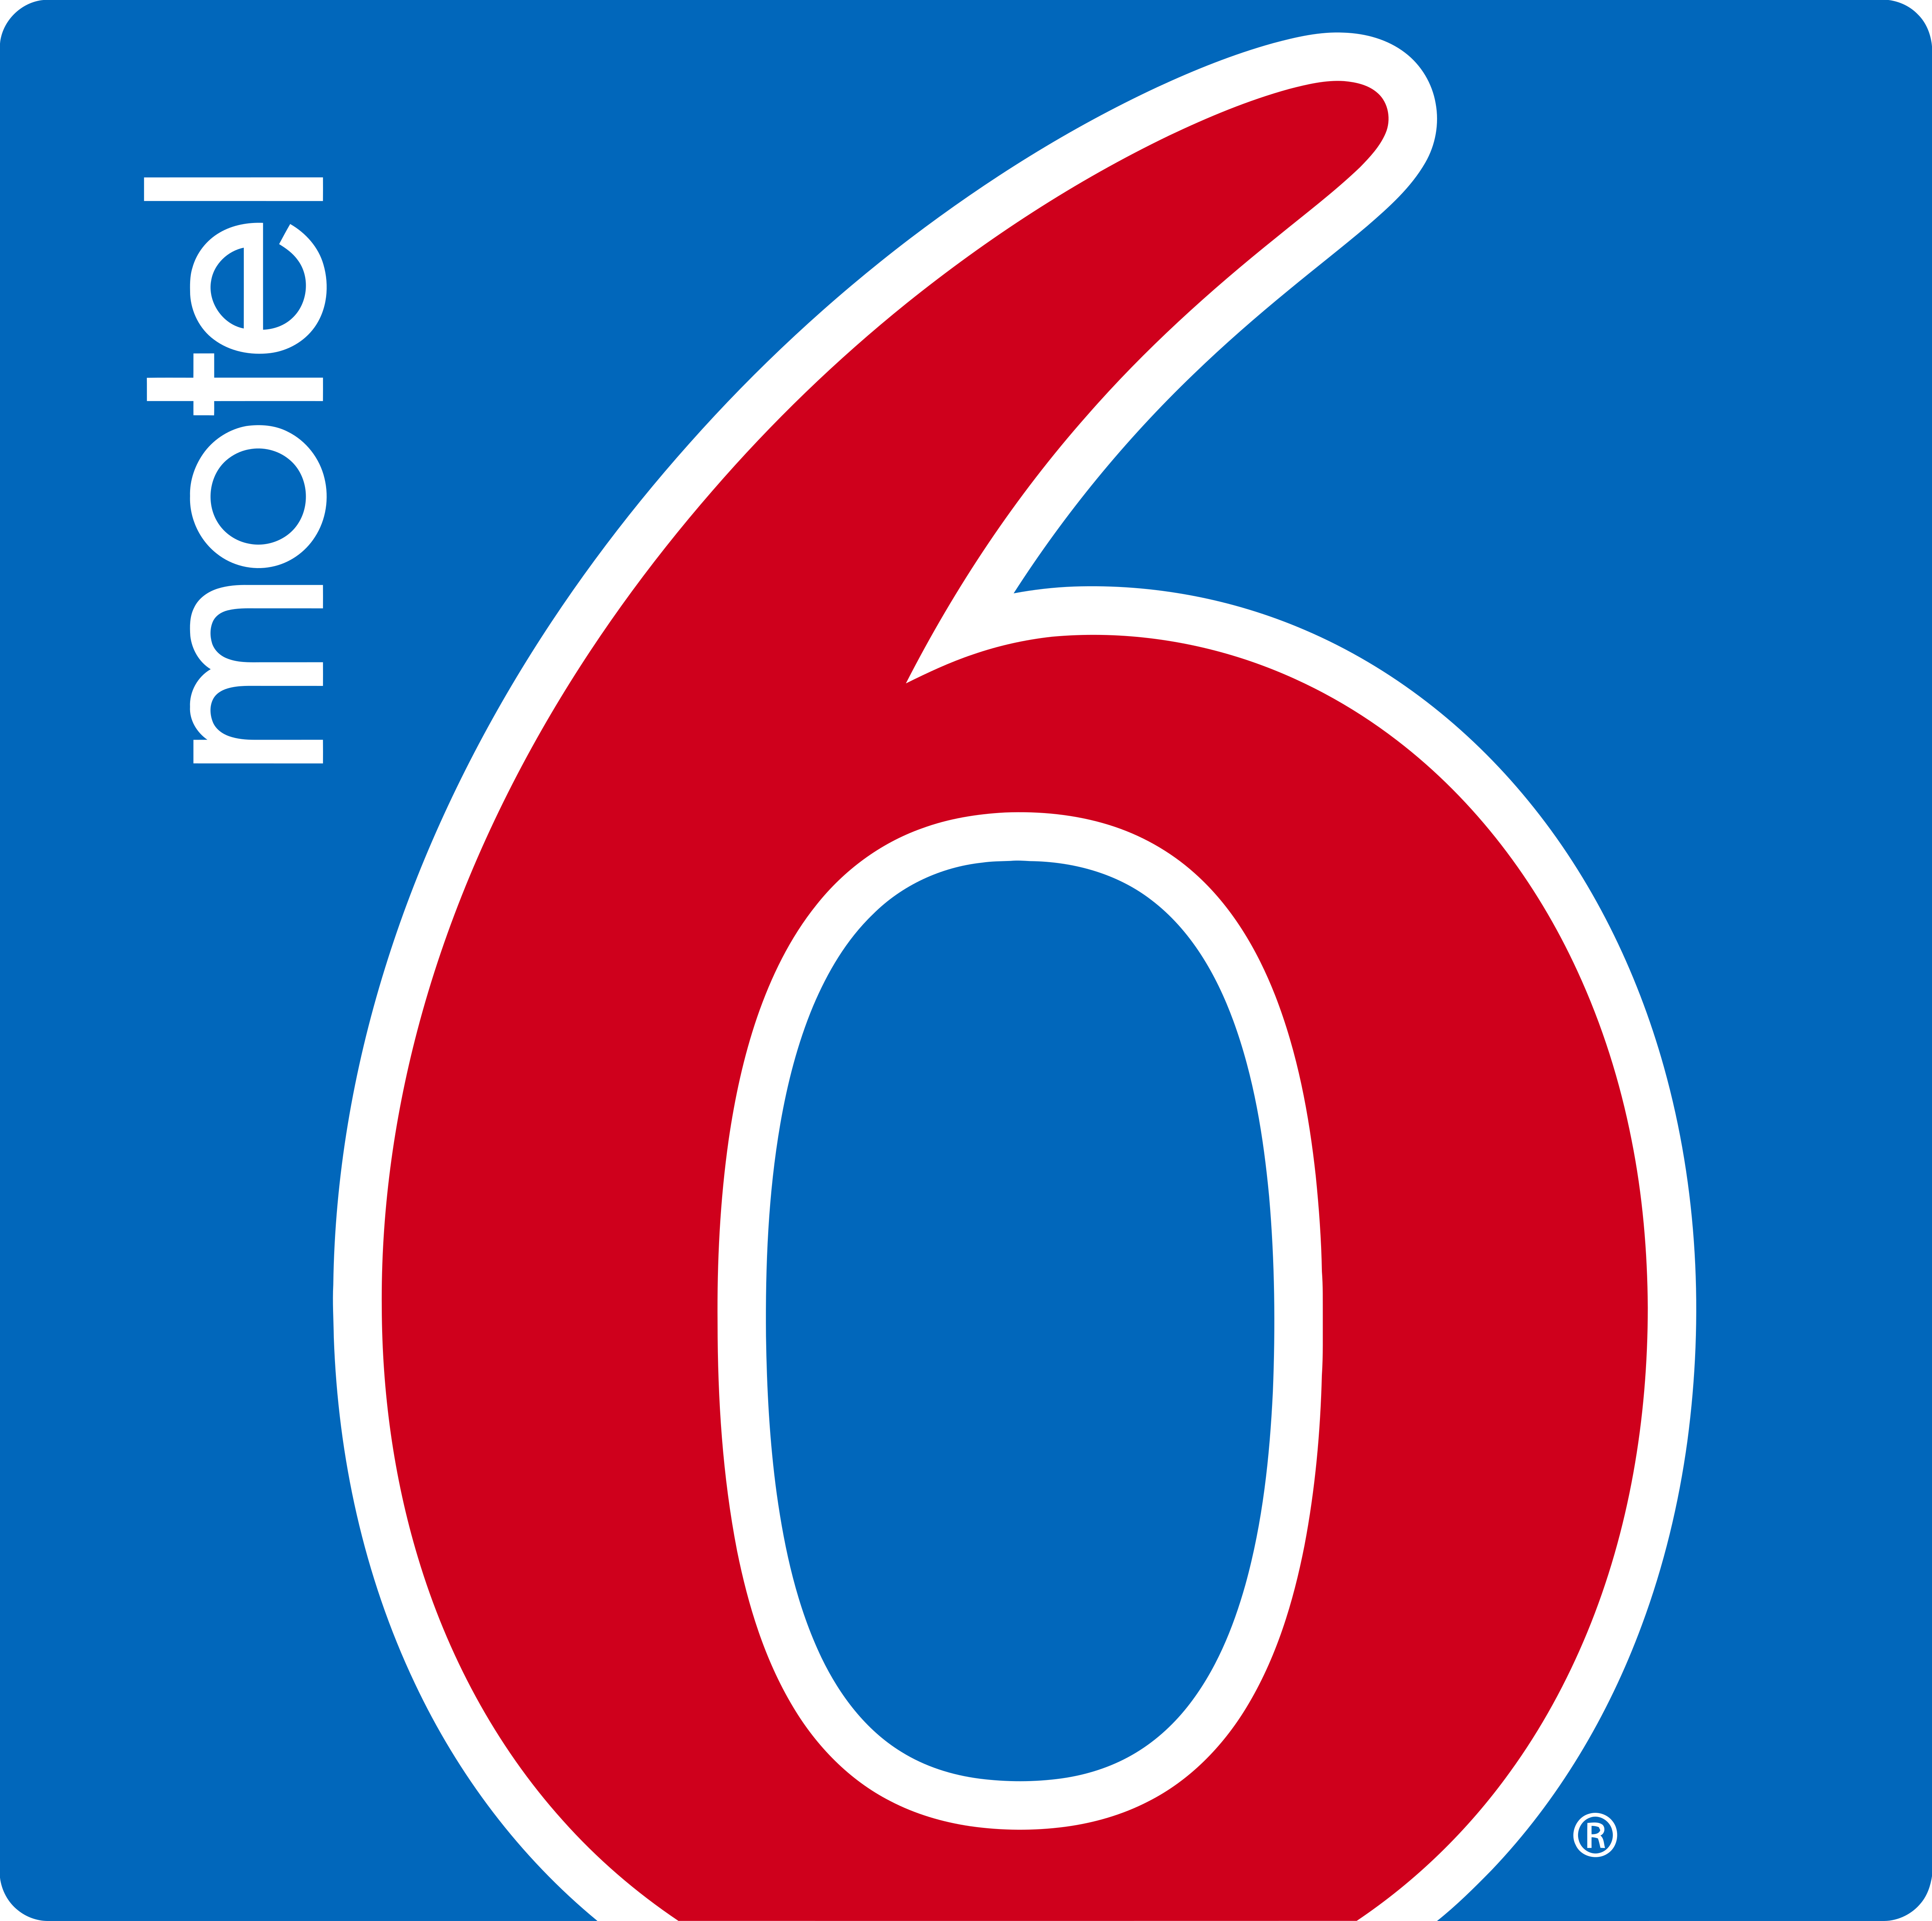 Motel6 – Logos Download